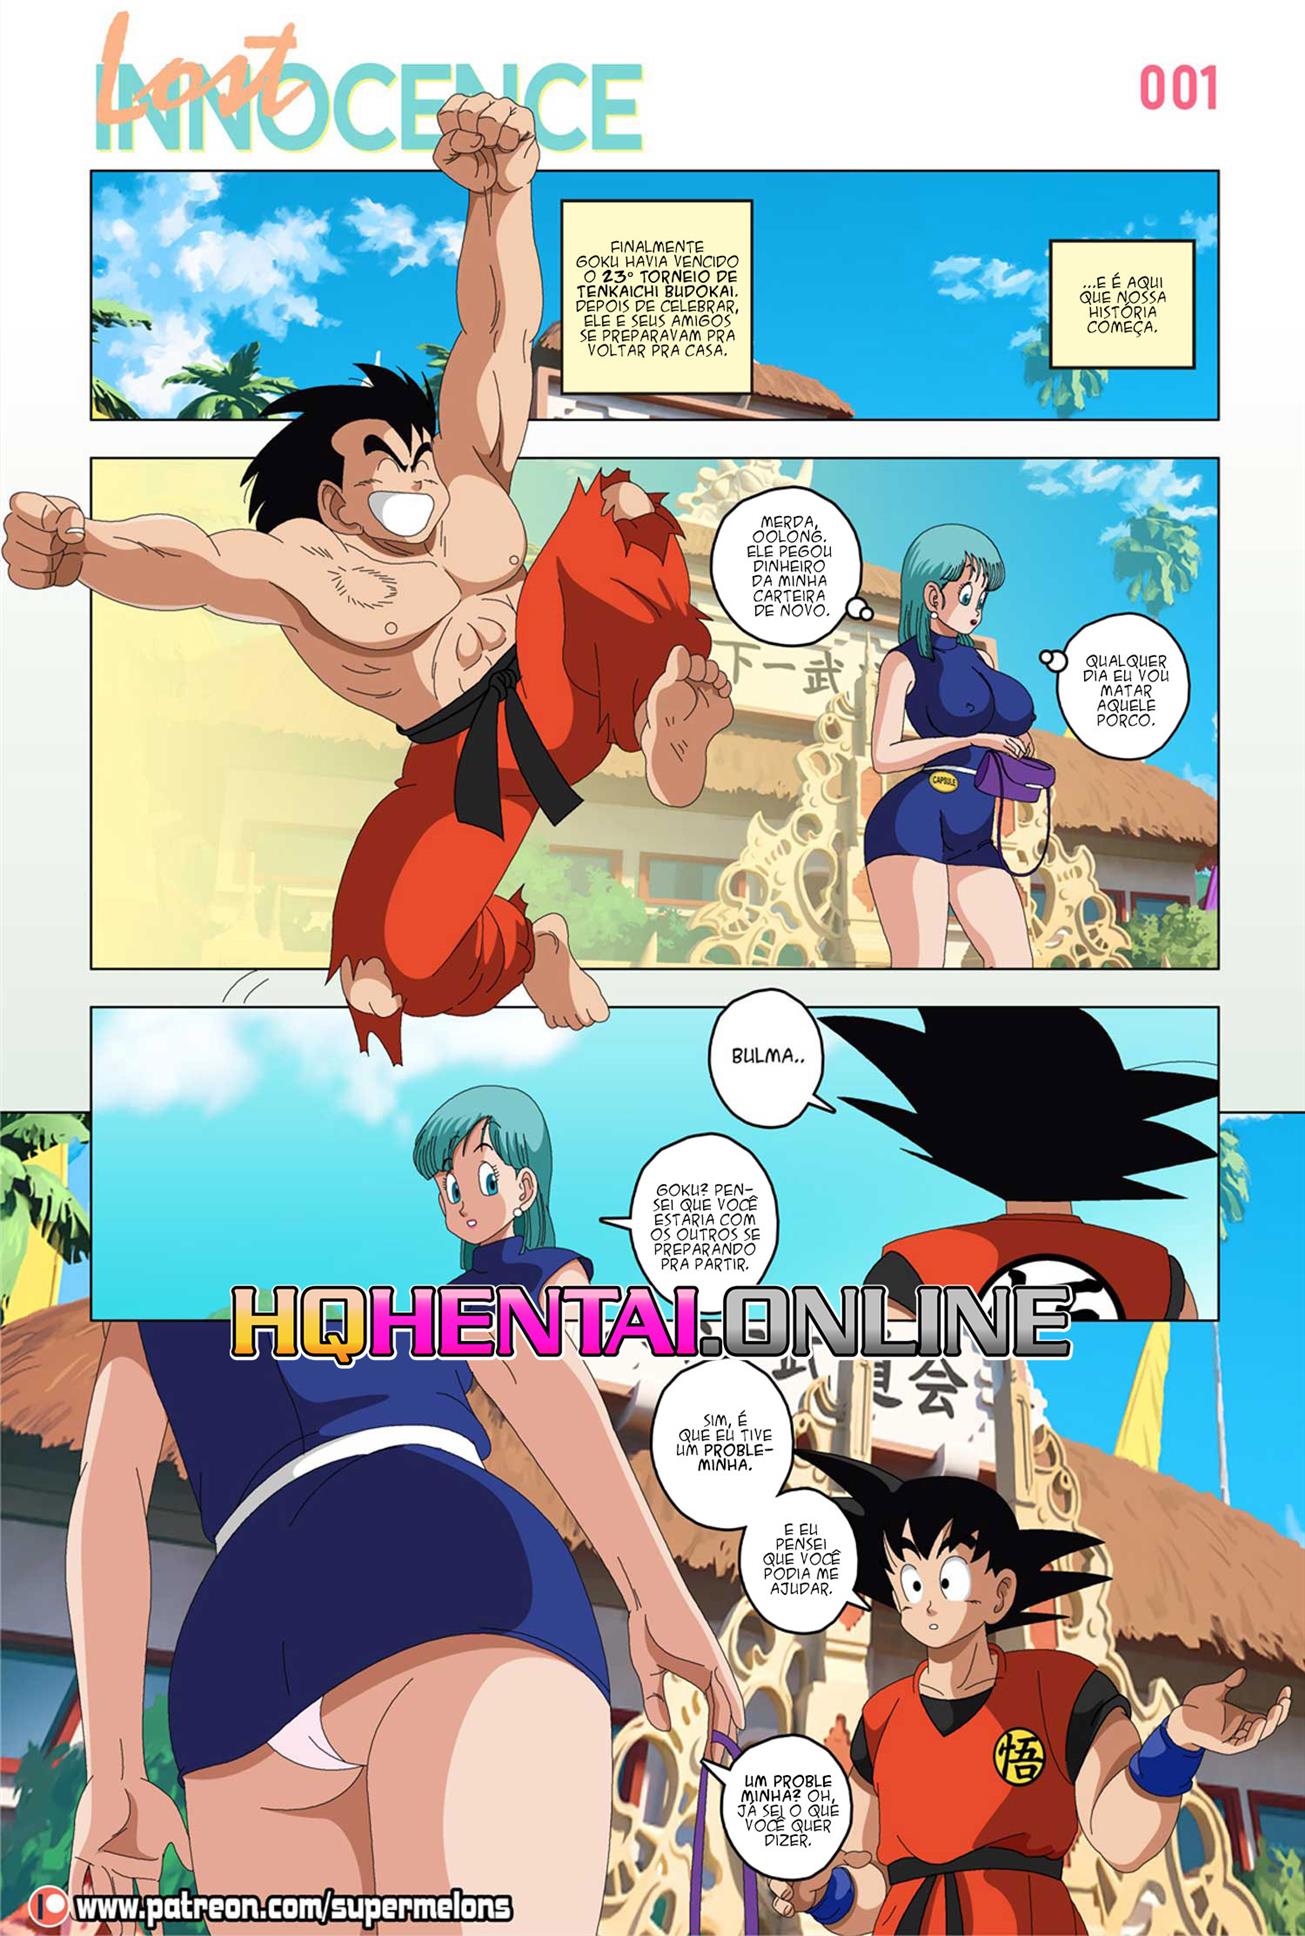 Tirando a inocência de Goku